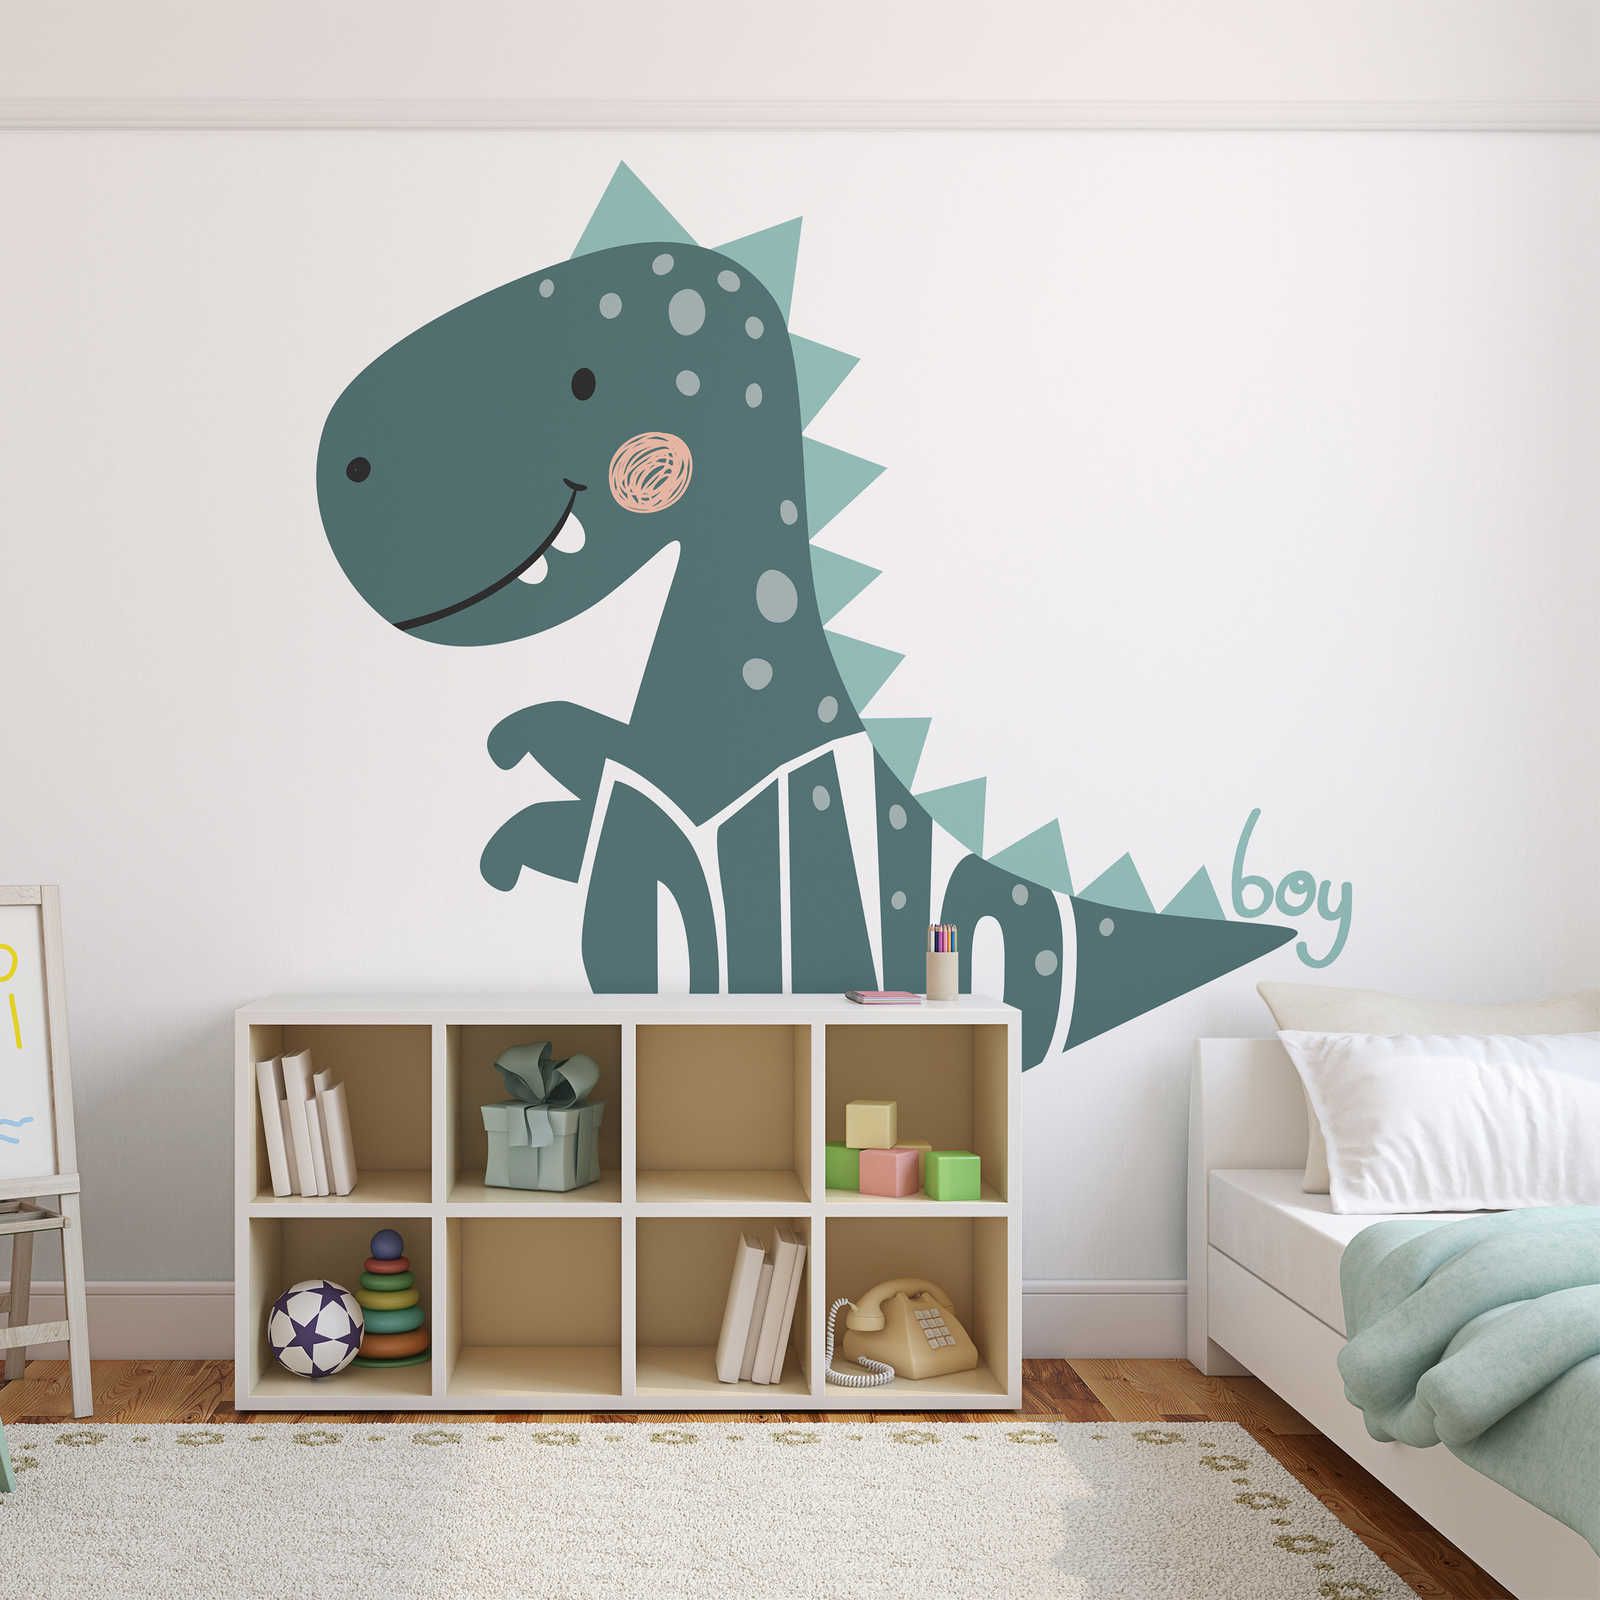 Papel pintable Habitación Infantil con Dinosaurio - Material sin tejer texturado
